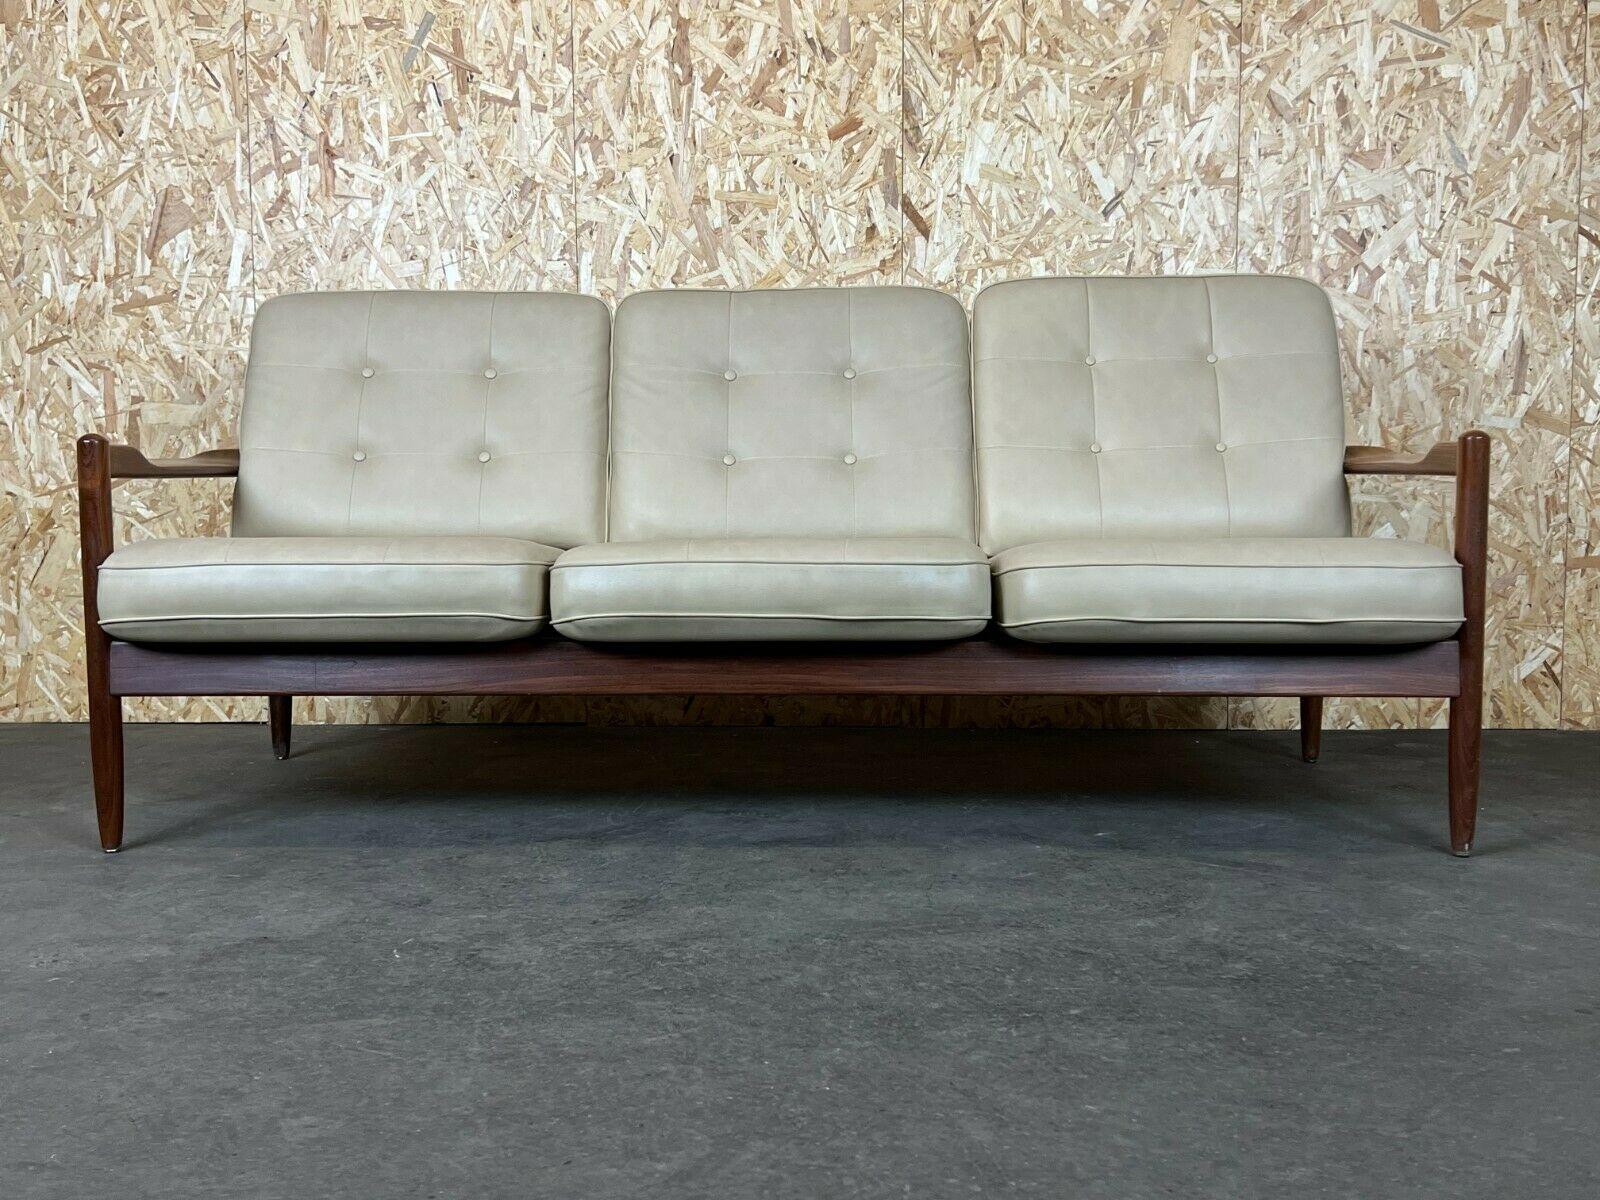 60s 70s sofa 3-seater couch seating set Danish Modern Design Denmark 60s 70s

Objet : canapé

Fabricant :

Condition : bon - vintage

Âge : environ 1960-1970

Dimensions :

192cm x 84cm x 81cm
Hauteur du siège = 41cm

Autres notes